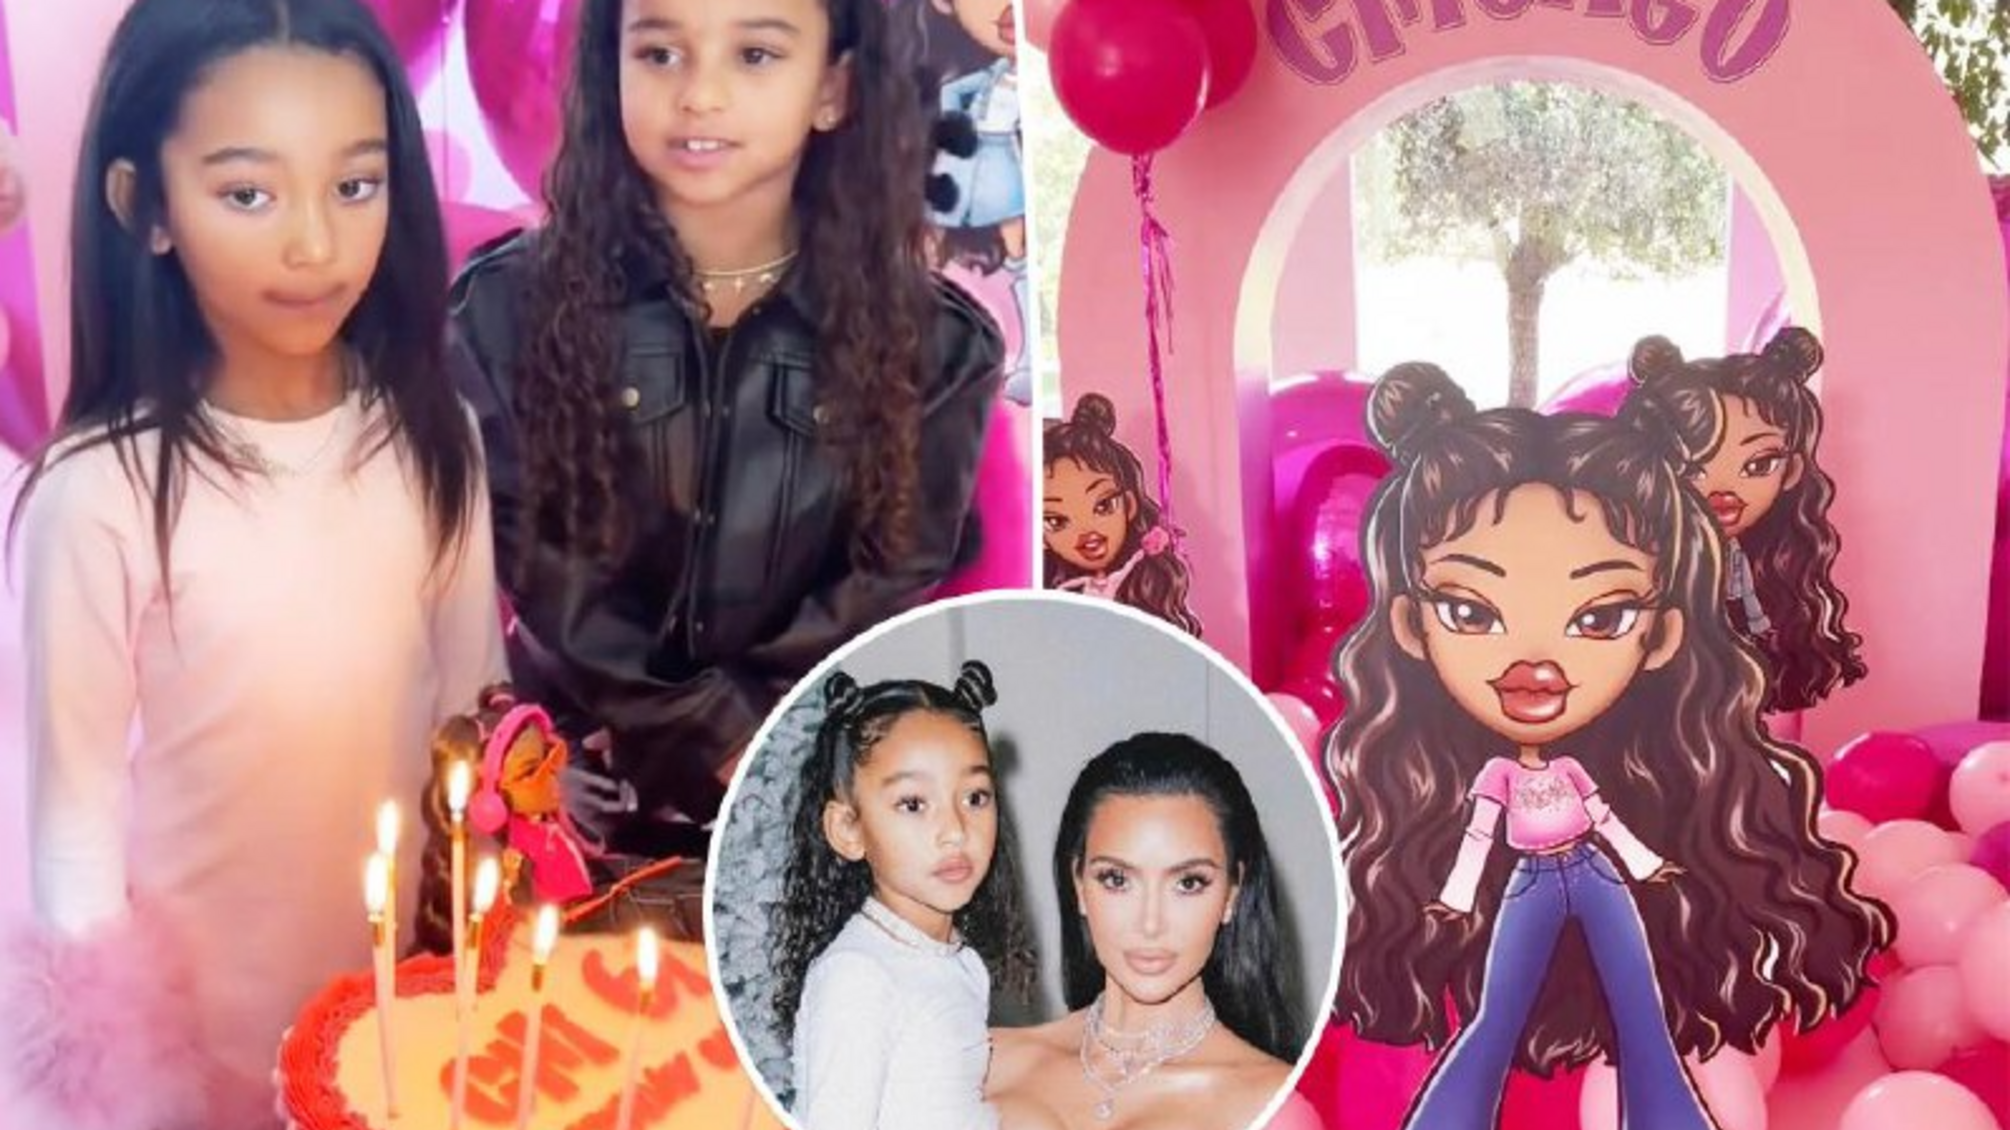 Младшая дочь Ким Кардашьян отметила 6-й день рождения на вечеринке в стиле Bratz